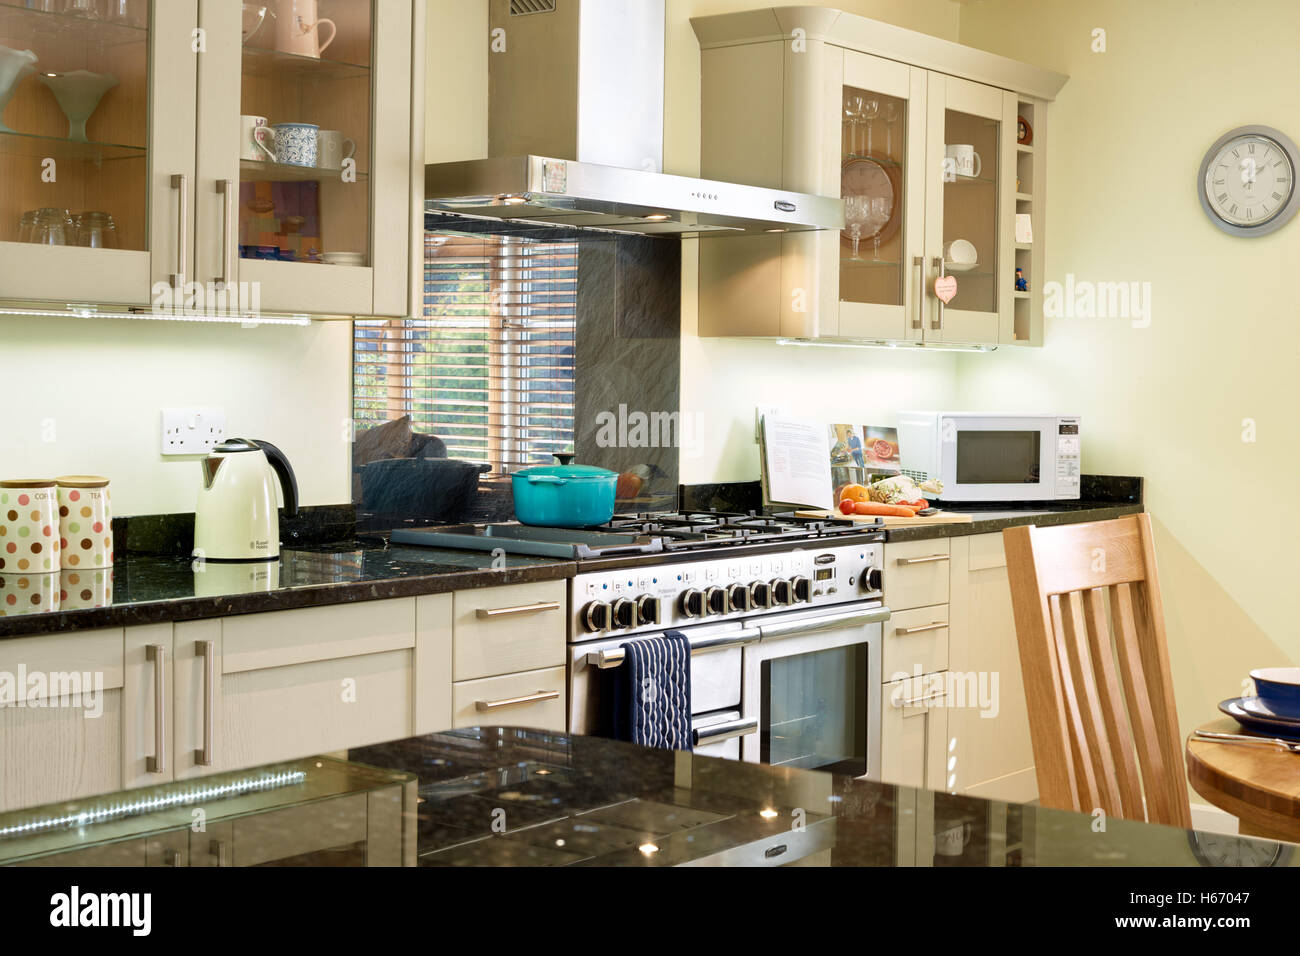 Eine moderne offene Küche Einbeziehung ein Küchenherd, Arbeitsplatten Haube & Granit. Oxfordshire, Vereinigtes Königreich Stockfoto